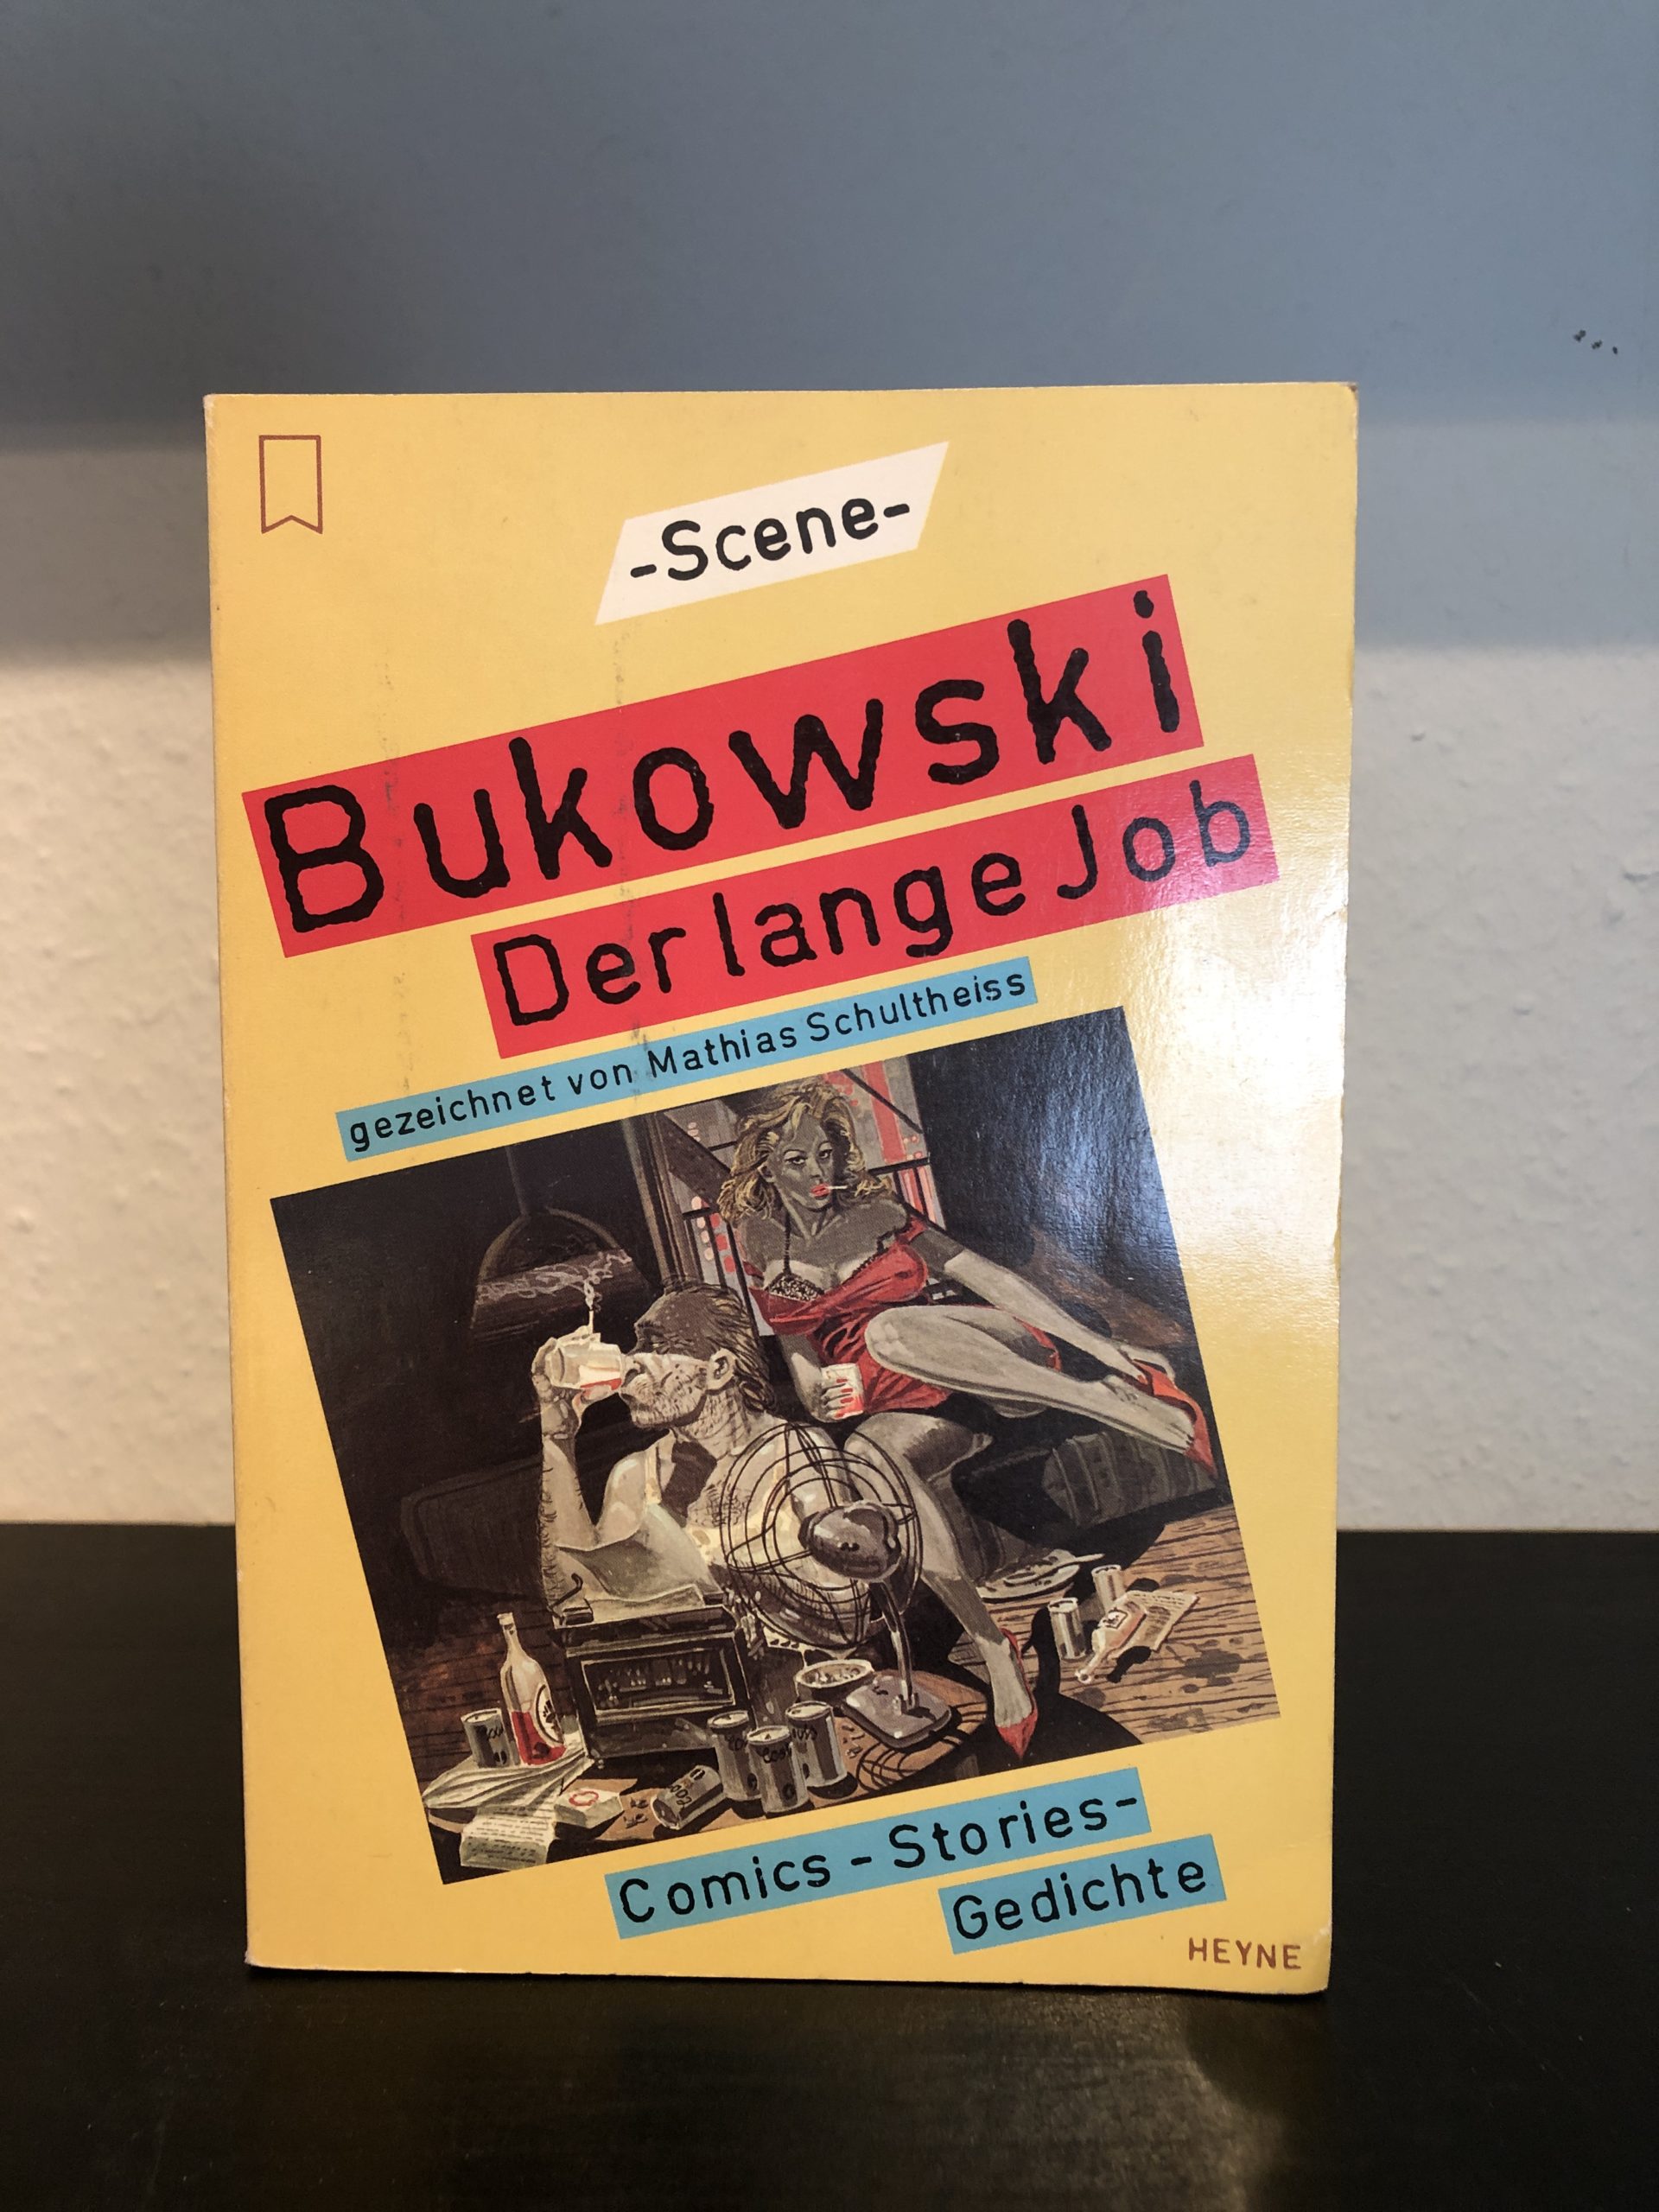 Der lange Job - Charles Bukowski-image